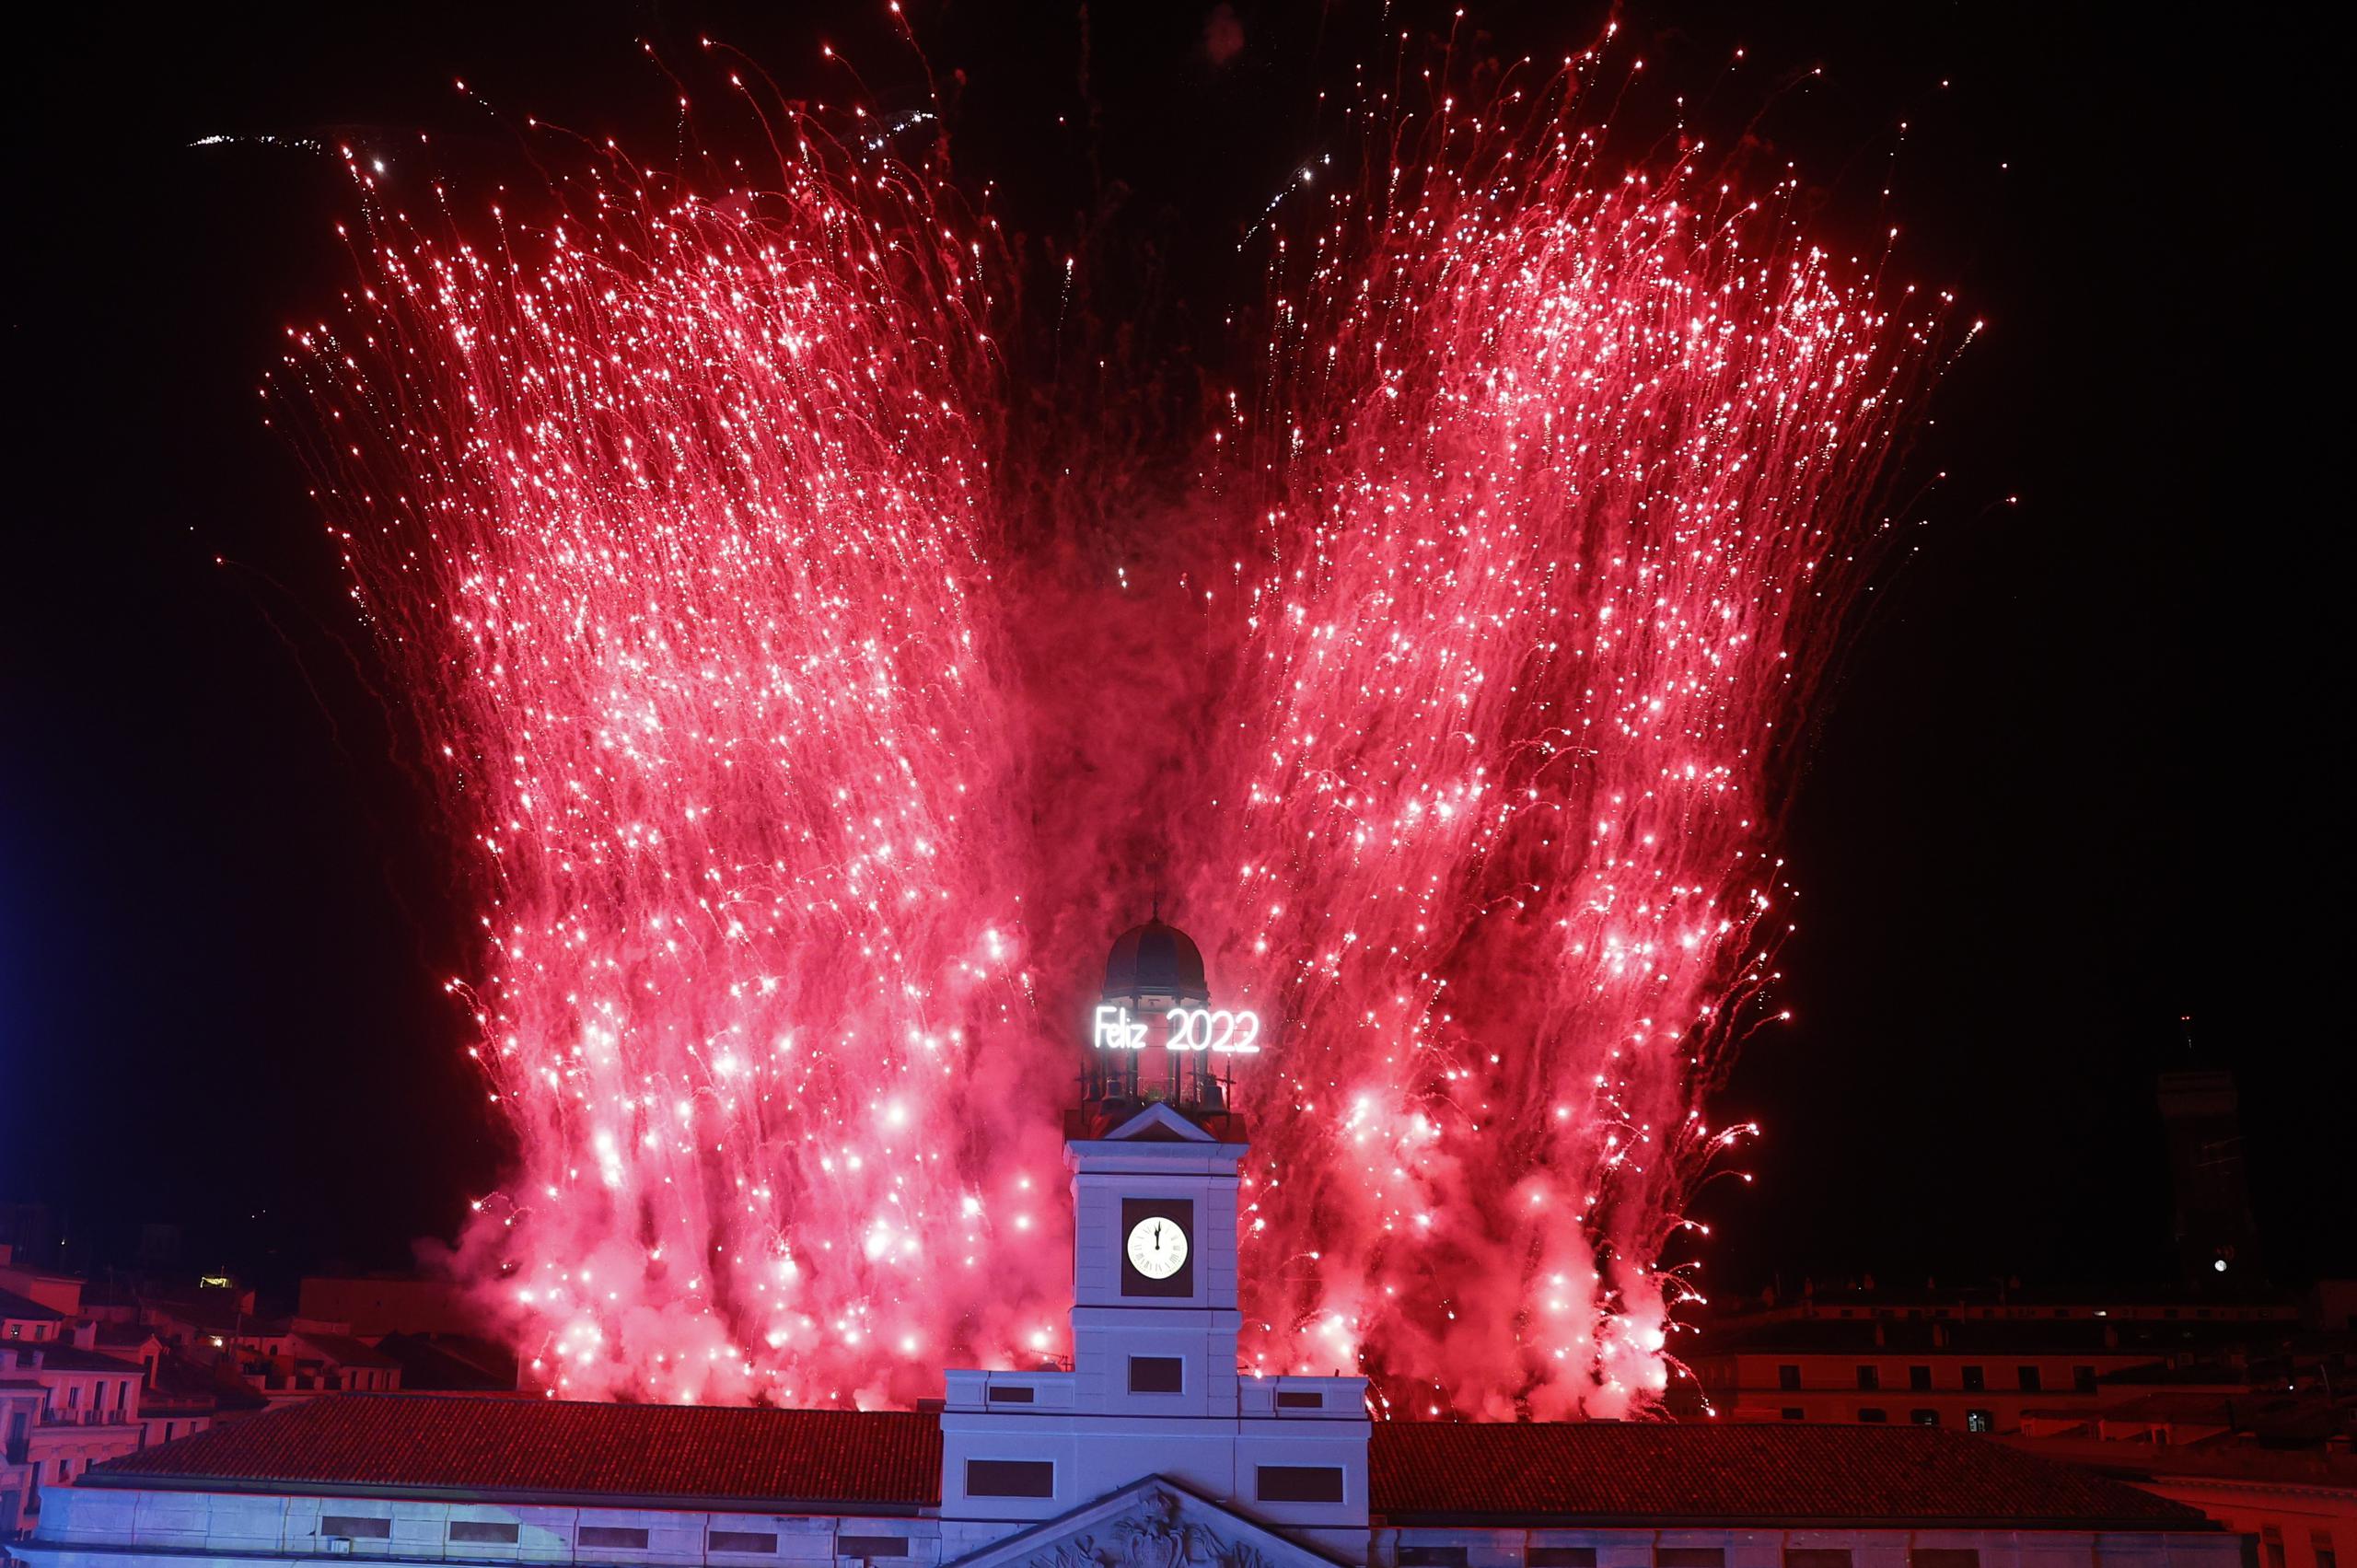 Las campanas de la torre del reloj de la Real Casa de Correos, ubicada en la Puerta del Sol, anuncian el Año Nuevo 2022 con fuegos pirotécnicos, en Madrid (España). EFE/ Juan Carlos Hidalgo
